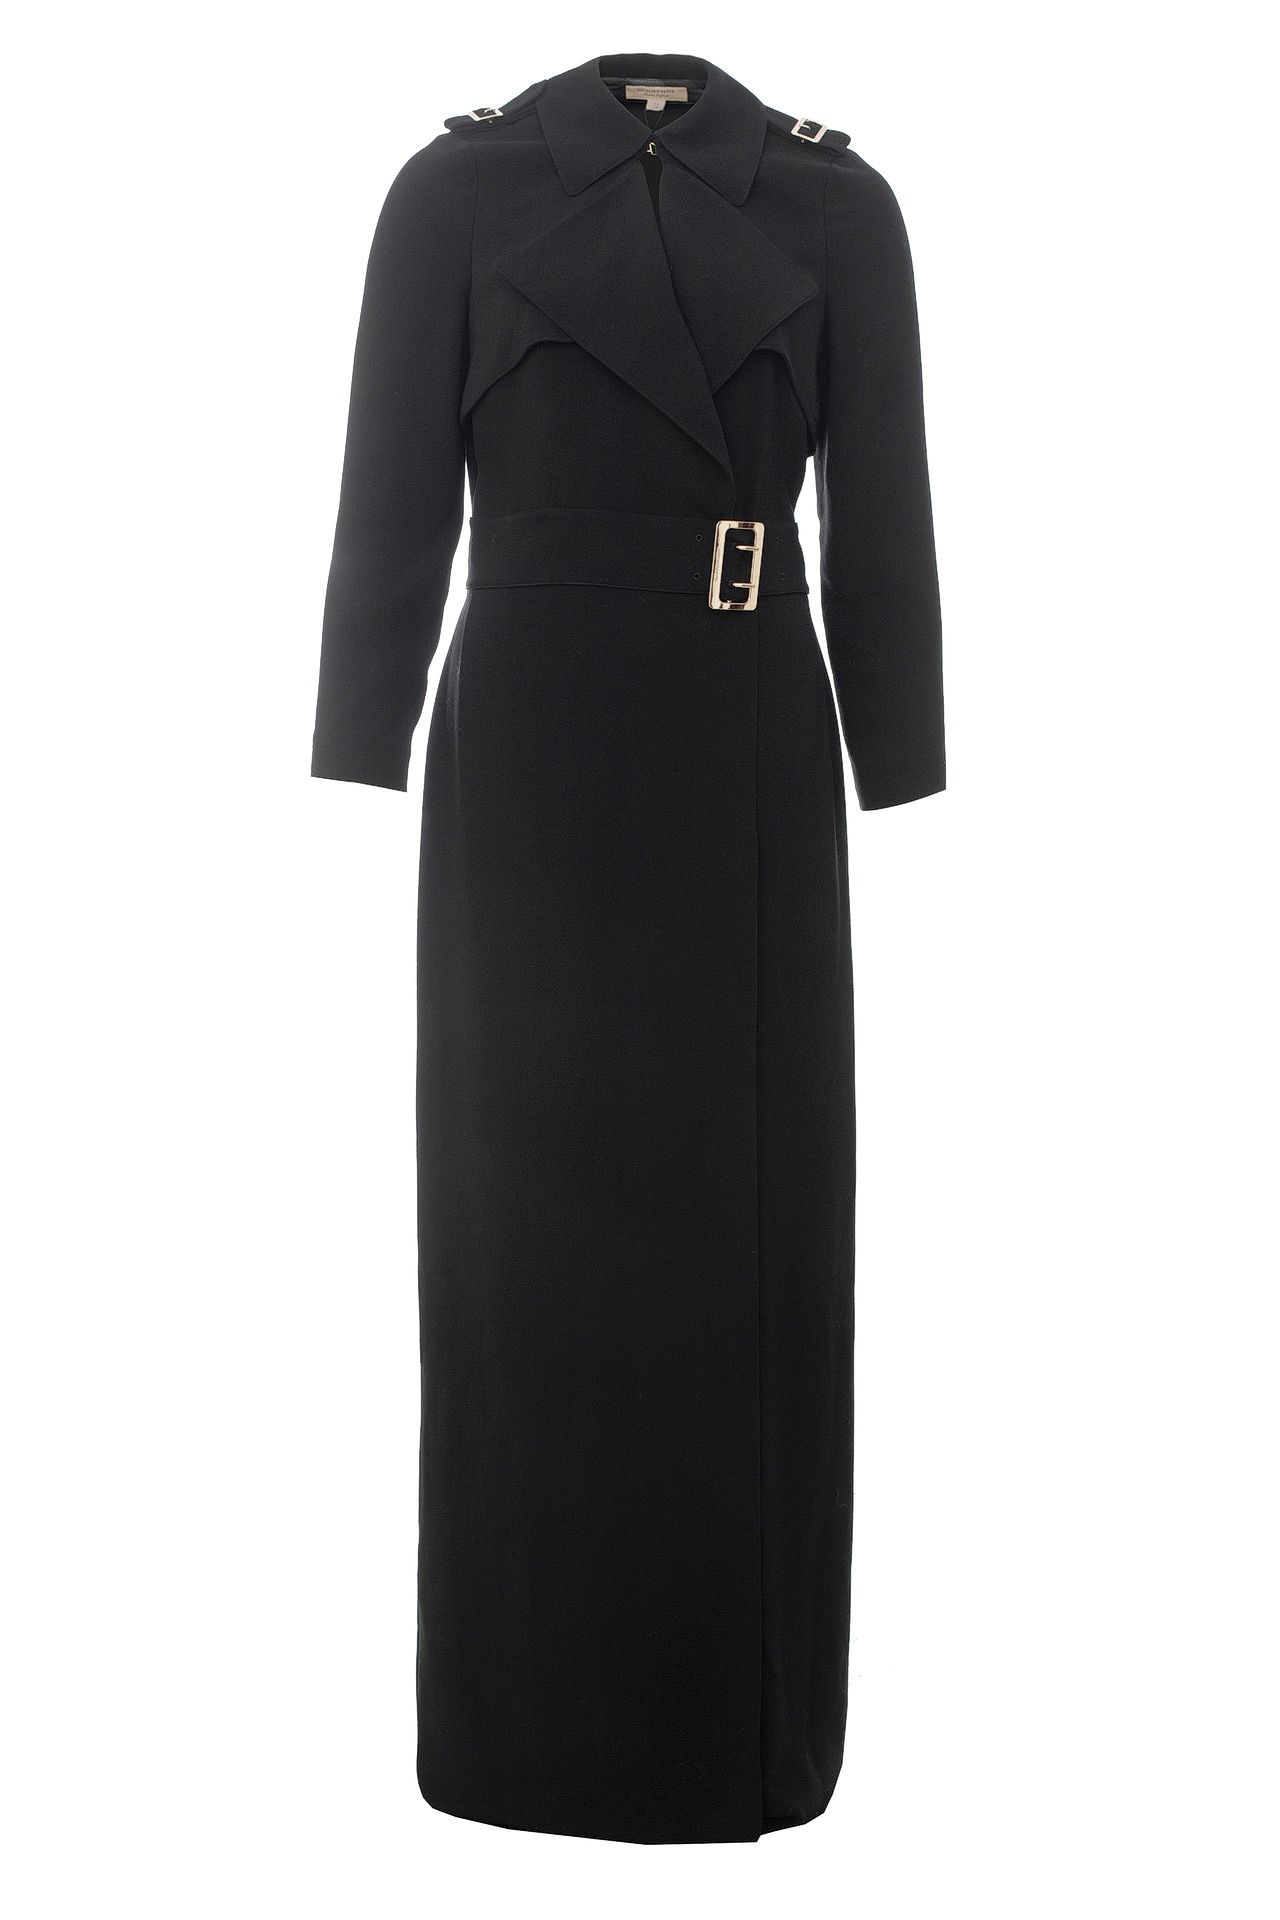 Одежда женская Платье BURBERRY (4044007/18.1). Купить за 34750 руб.